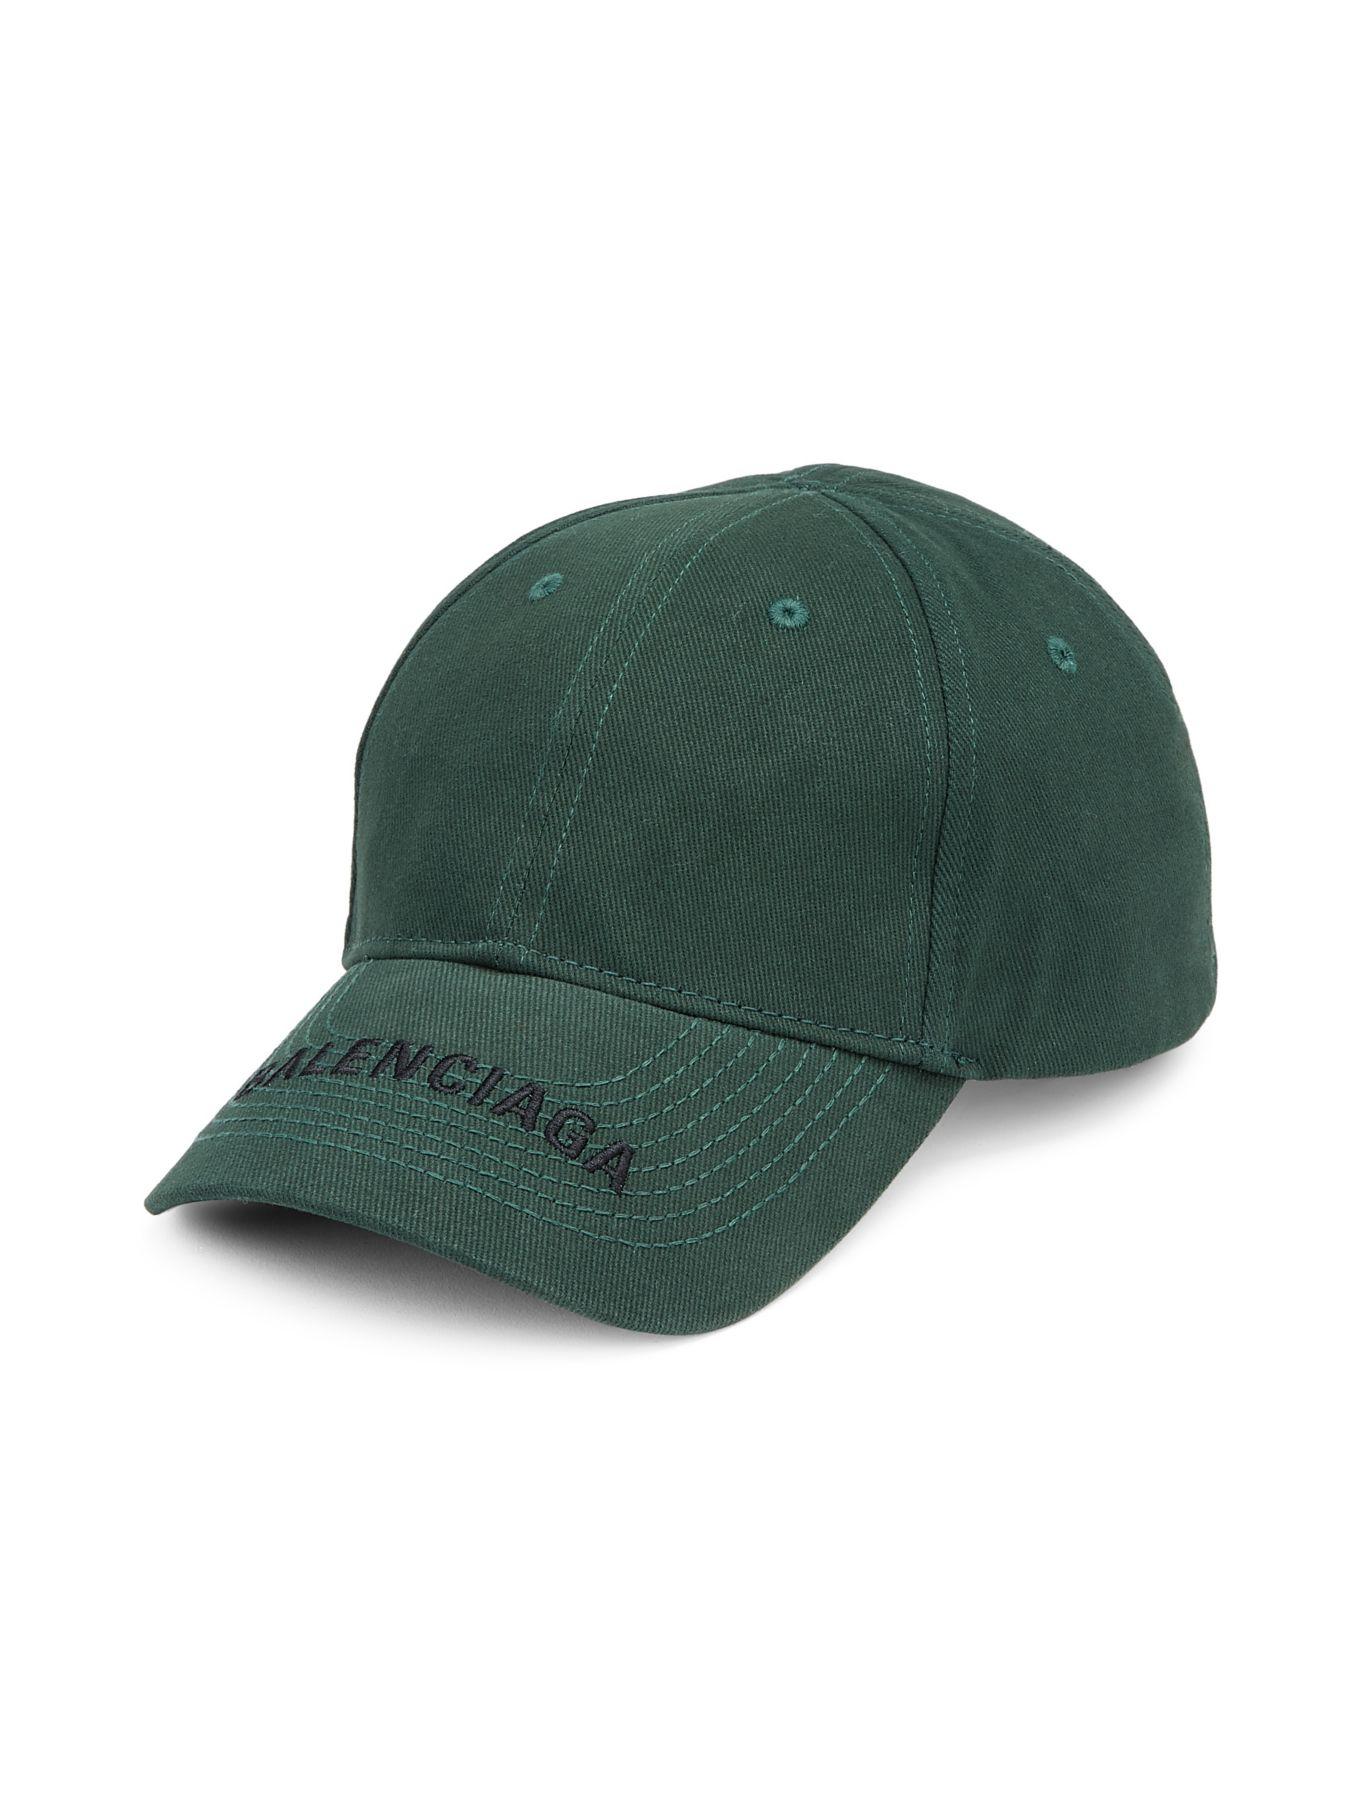 Balenciaga Logo Cotton Visor Cap in Dark Green (Green) for Men - Lyst